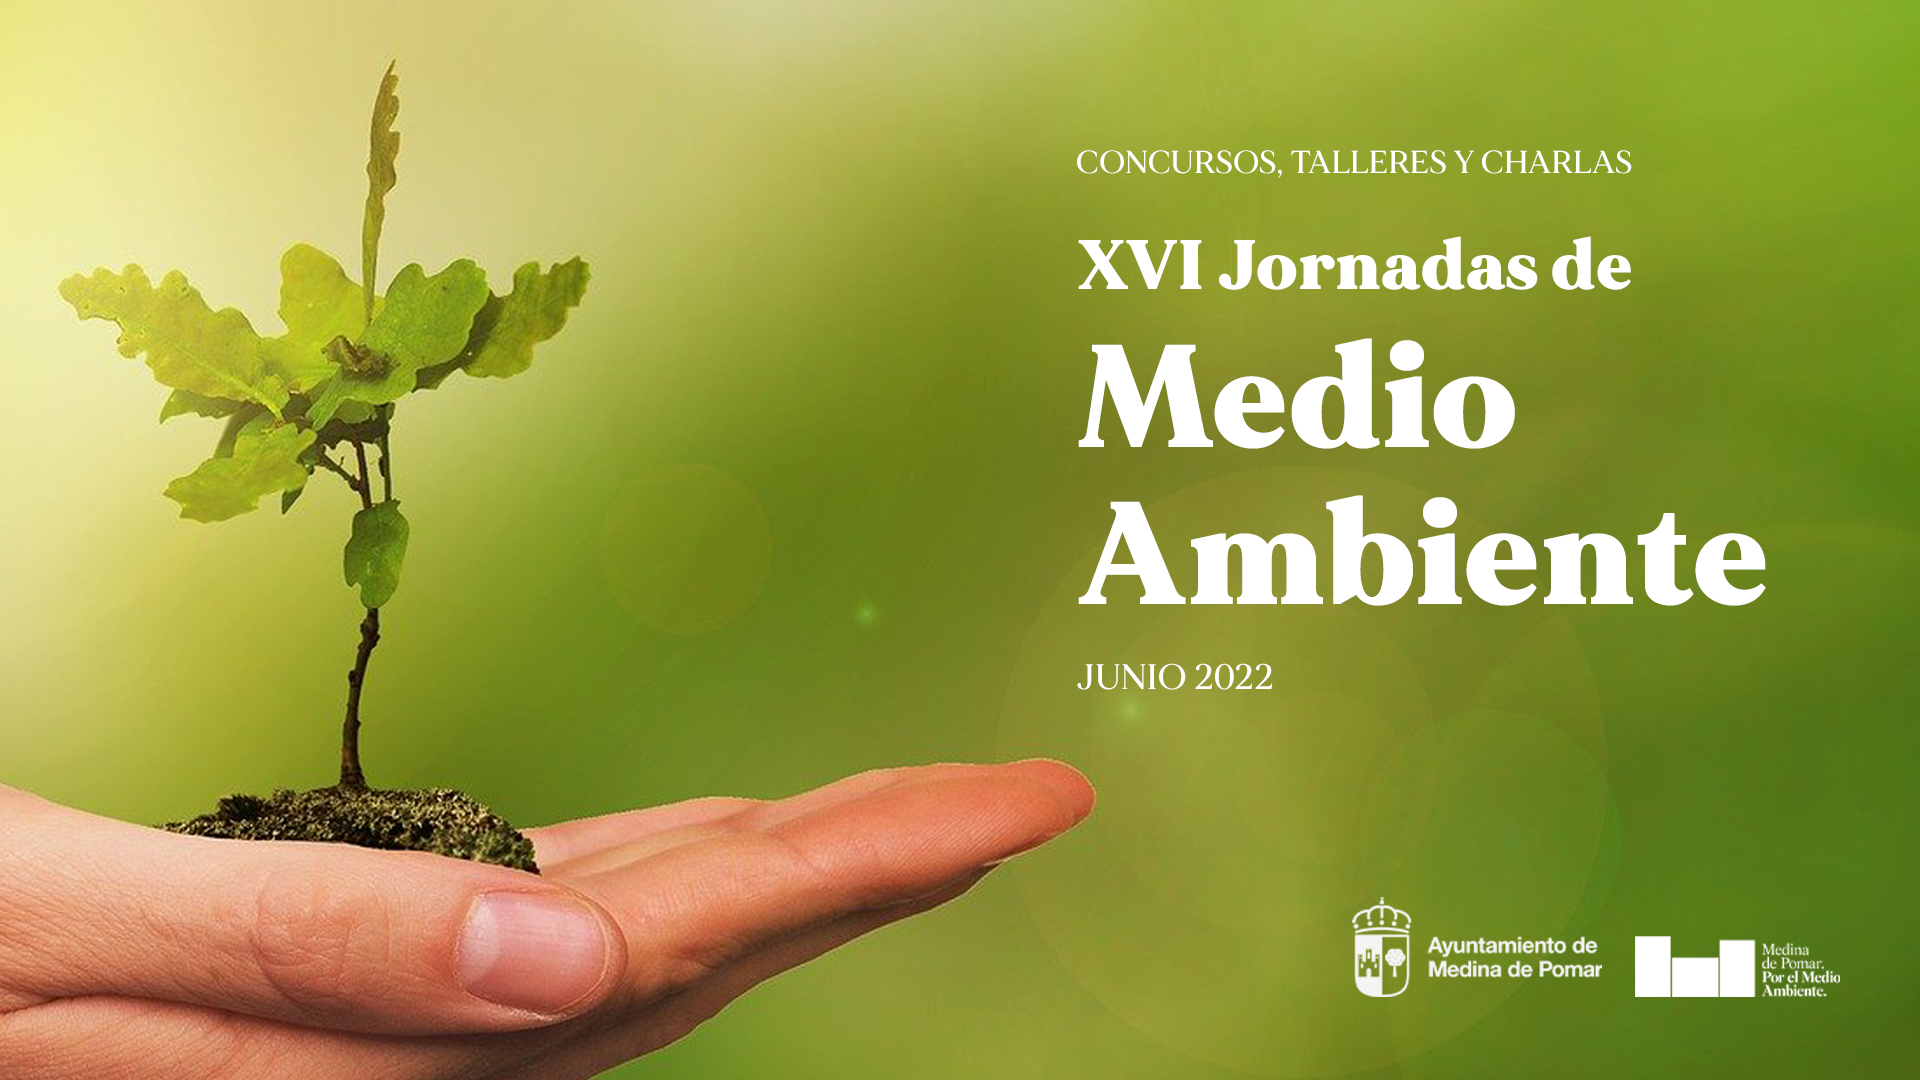 Concursos, charlas y talleres en las XVI Jornadas de Medio Ambiente de Medina de Pomar